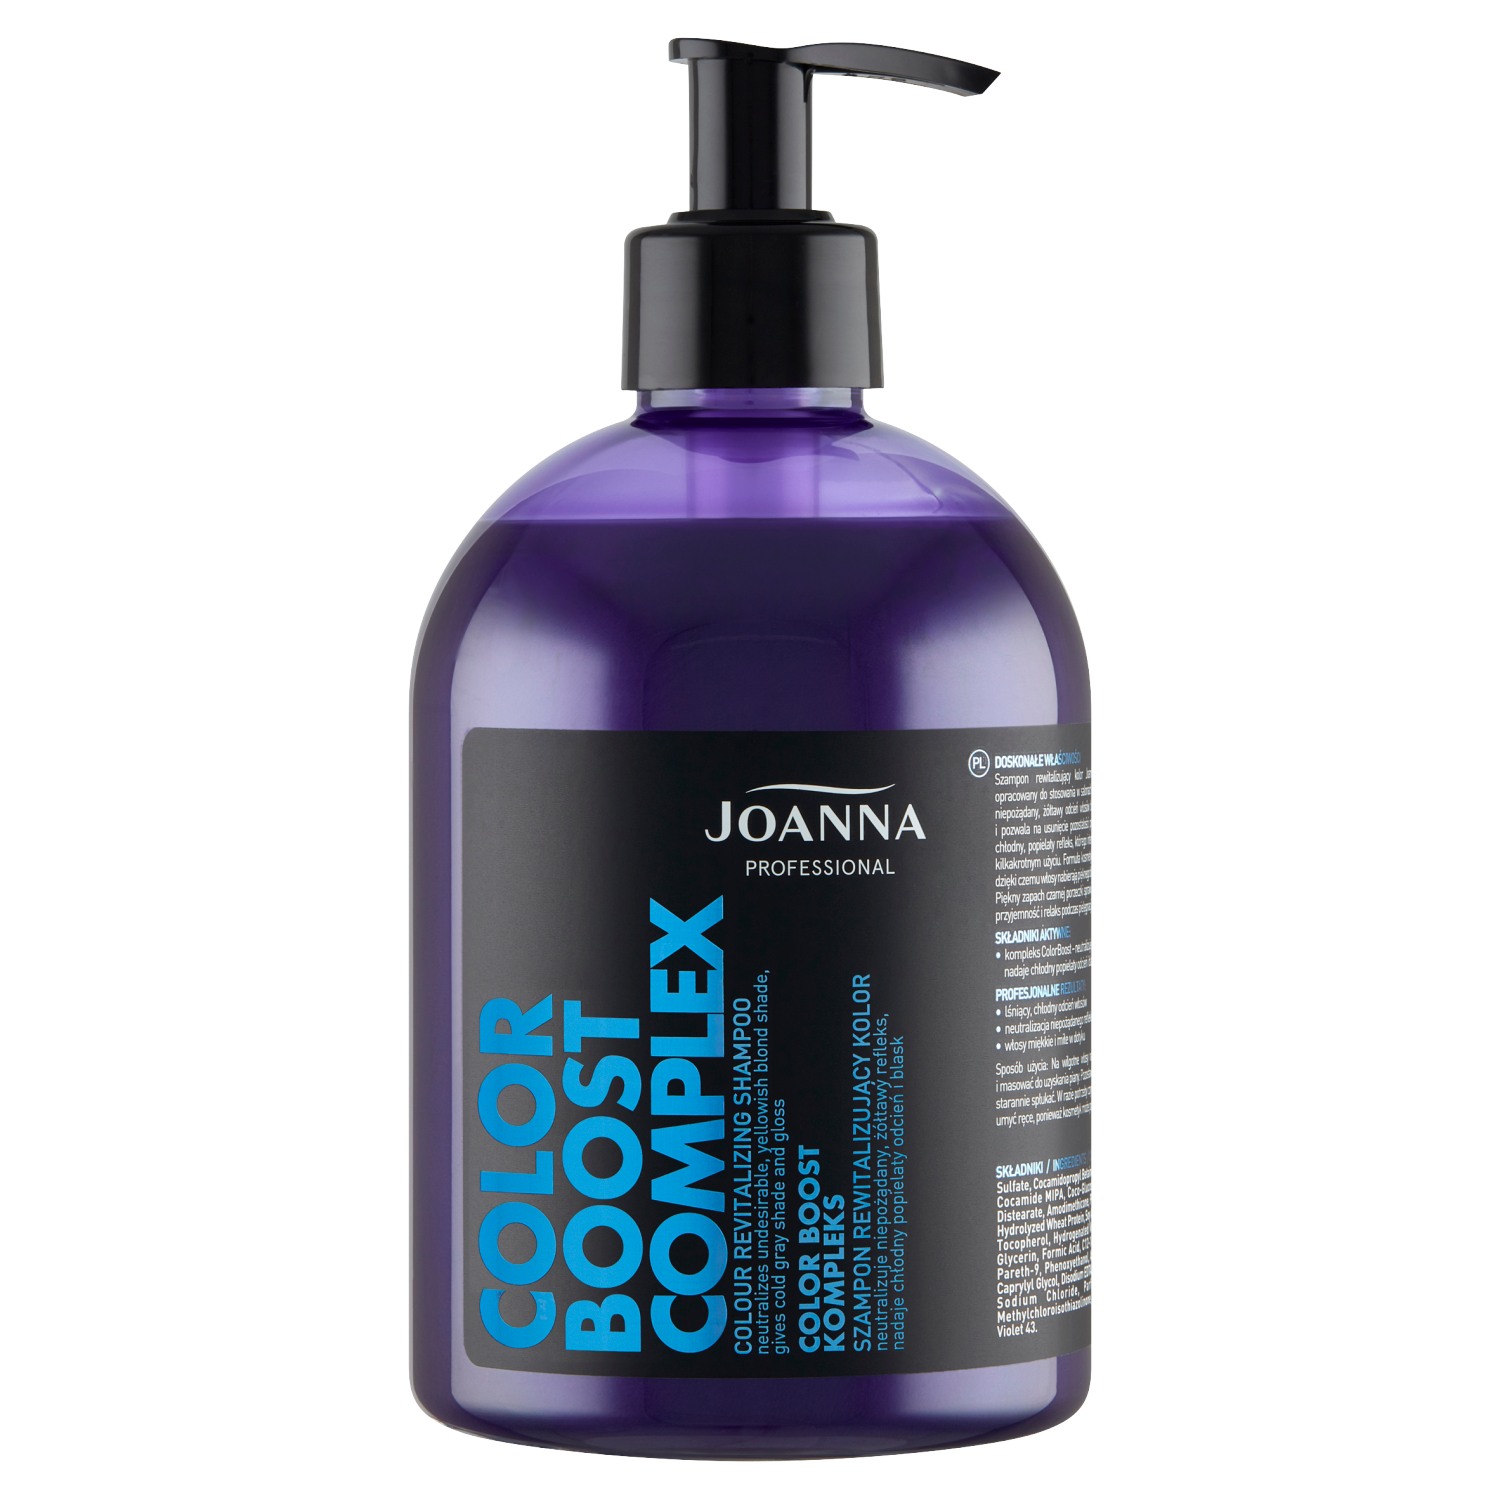 Joanna Professional Color Boost Complex восстанавливающий шампунь для светлых волос, 500 мл